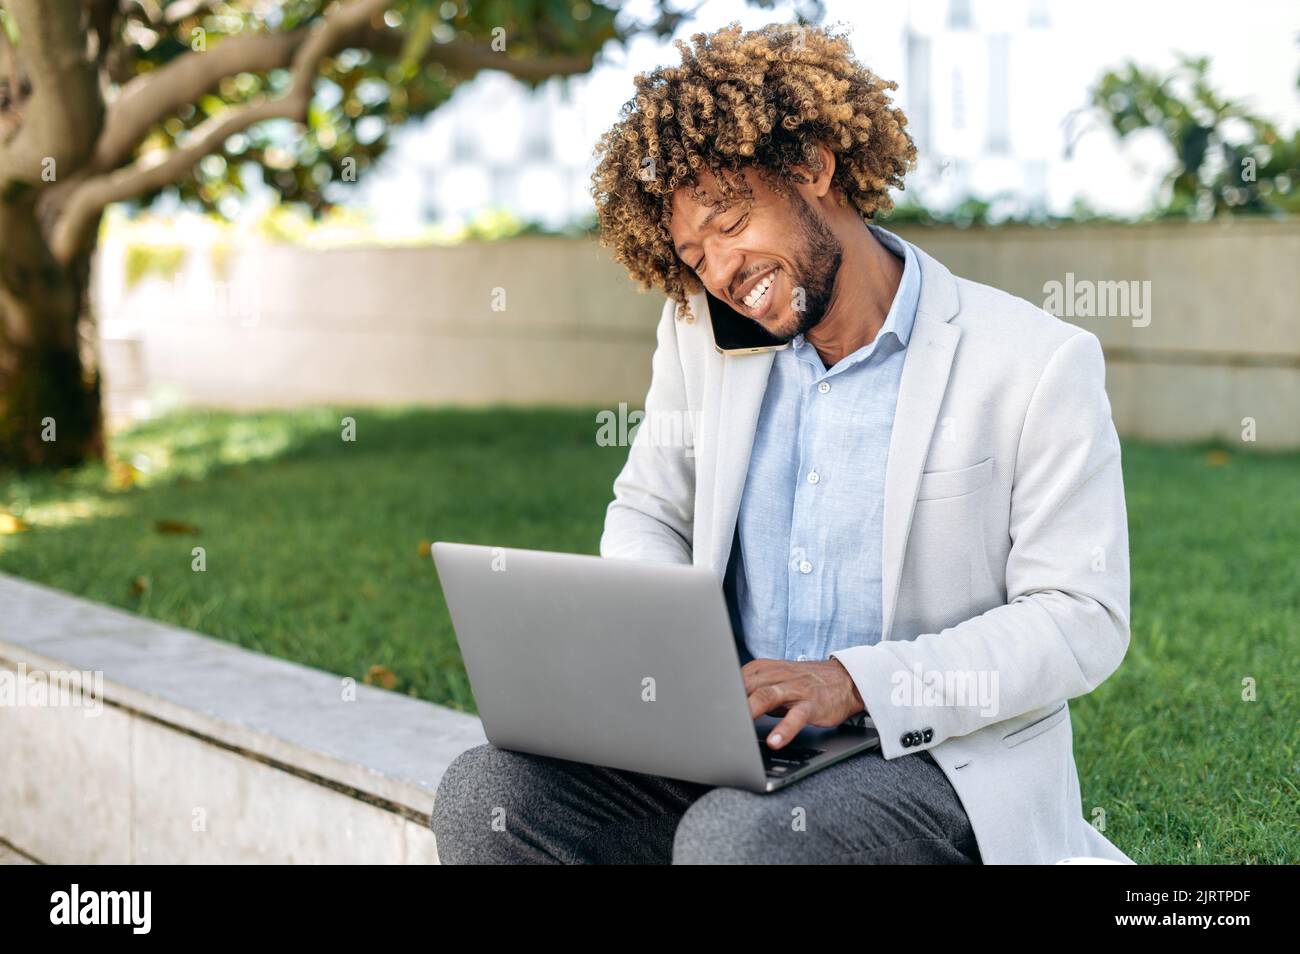 Positiv beschäftigt erfolgreicher hispanischer oder brasilianischer Geschäftsmann oder Top-Manager, arbeitet im Freien mit Laptop, spricht auf dem Smartphone mit dem Kunden oder Kollegen, tippt auf der Tastatur. Telefongespräch während der Arbeit Stockfoto